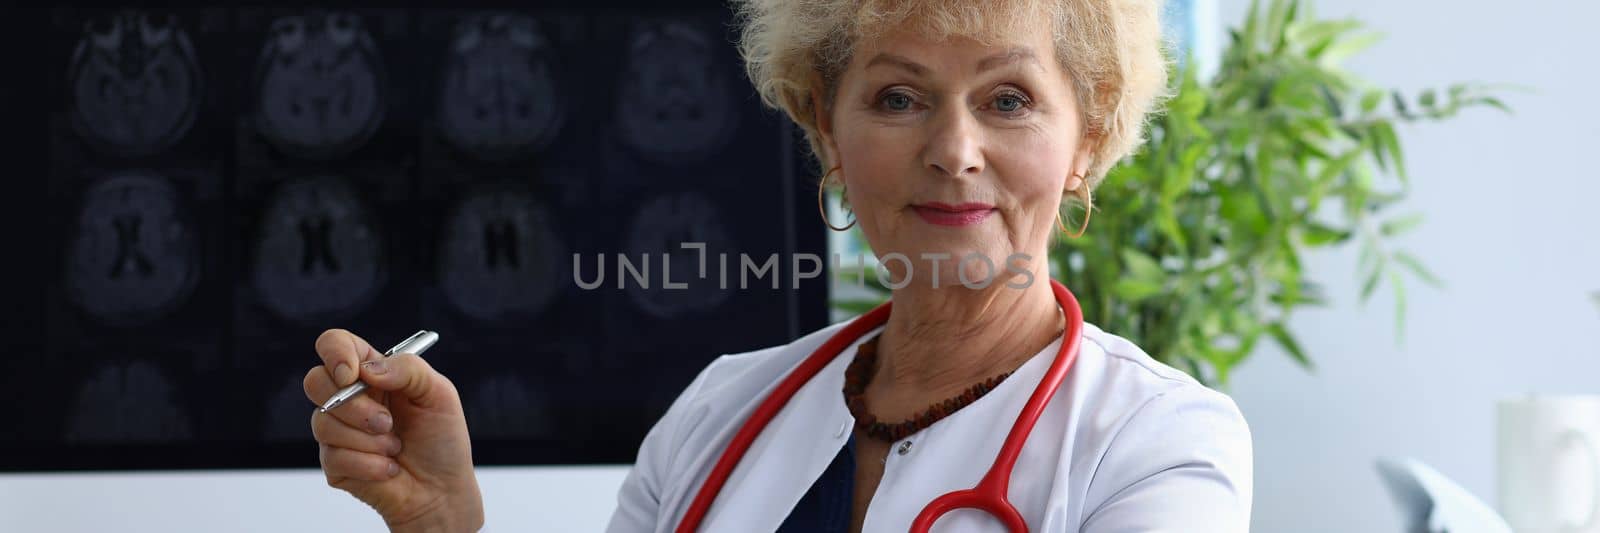 Portrait of elderly woman doctor in field of medicine by kuprevich